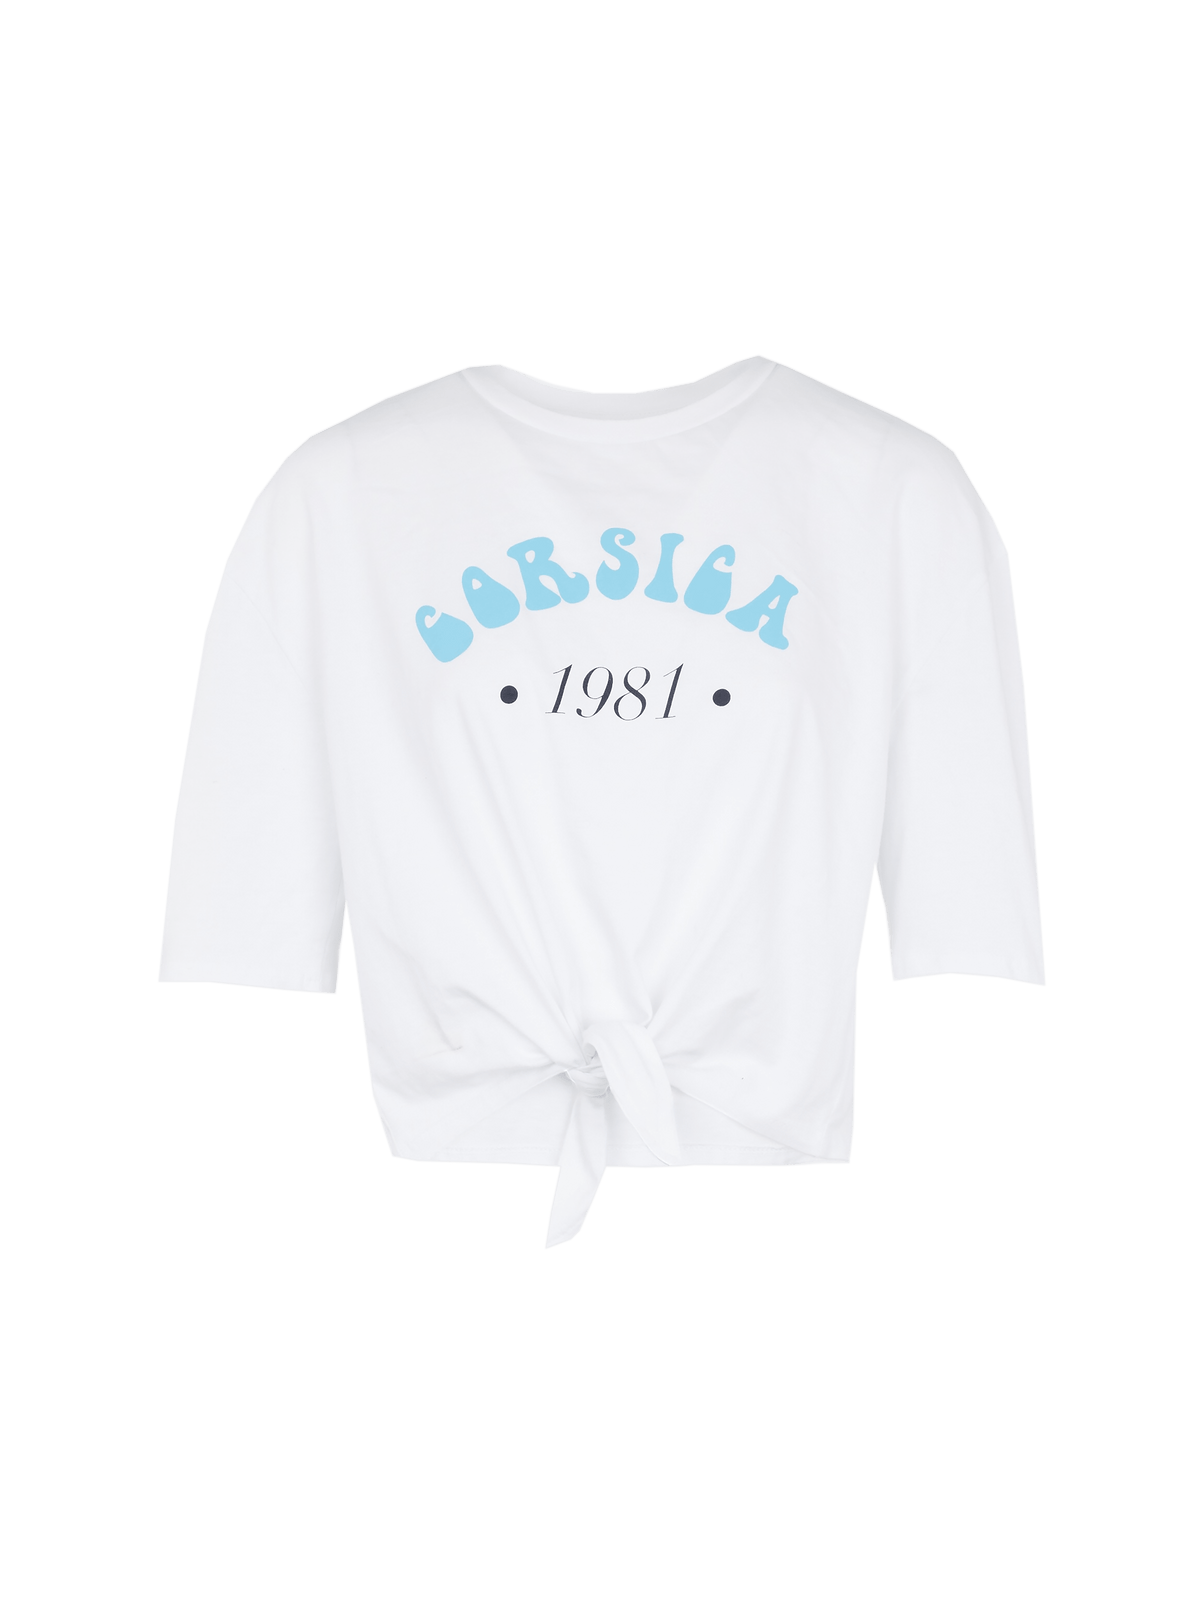 CORSICA - T-shirt cropped noué manches courtes en coton blanc imprimé bleu ciel T-shirt Fête Impériale